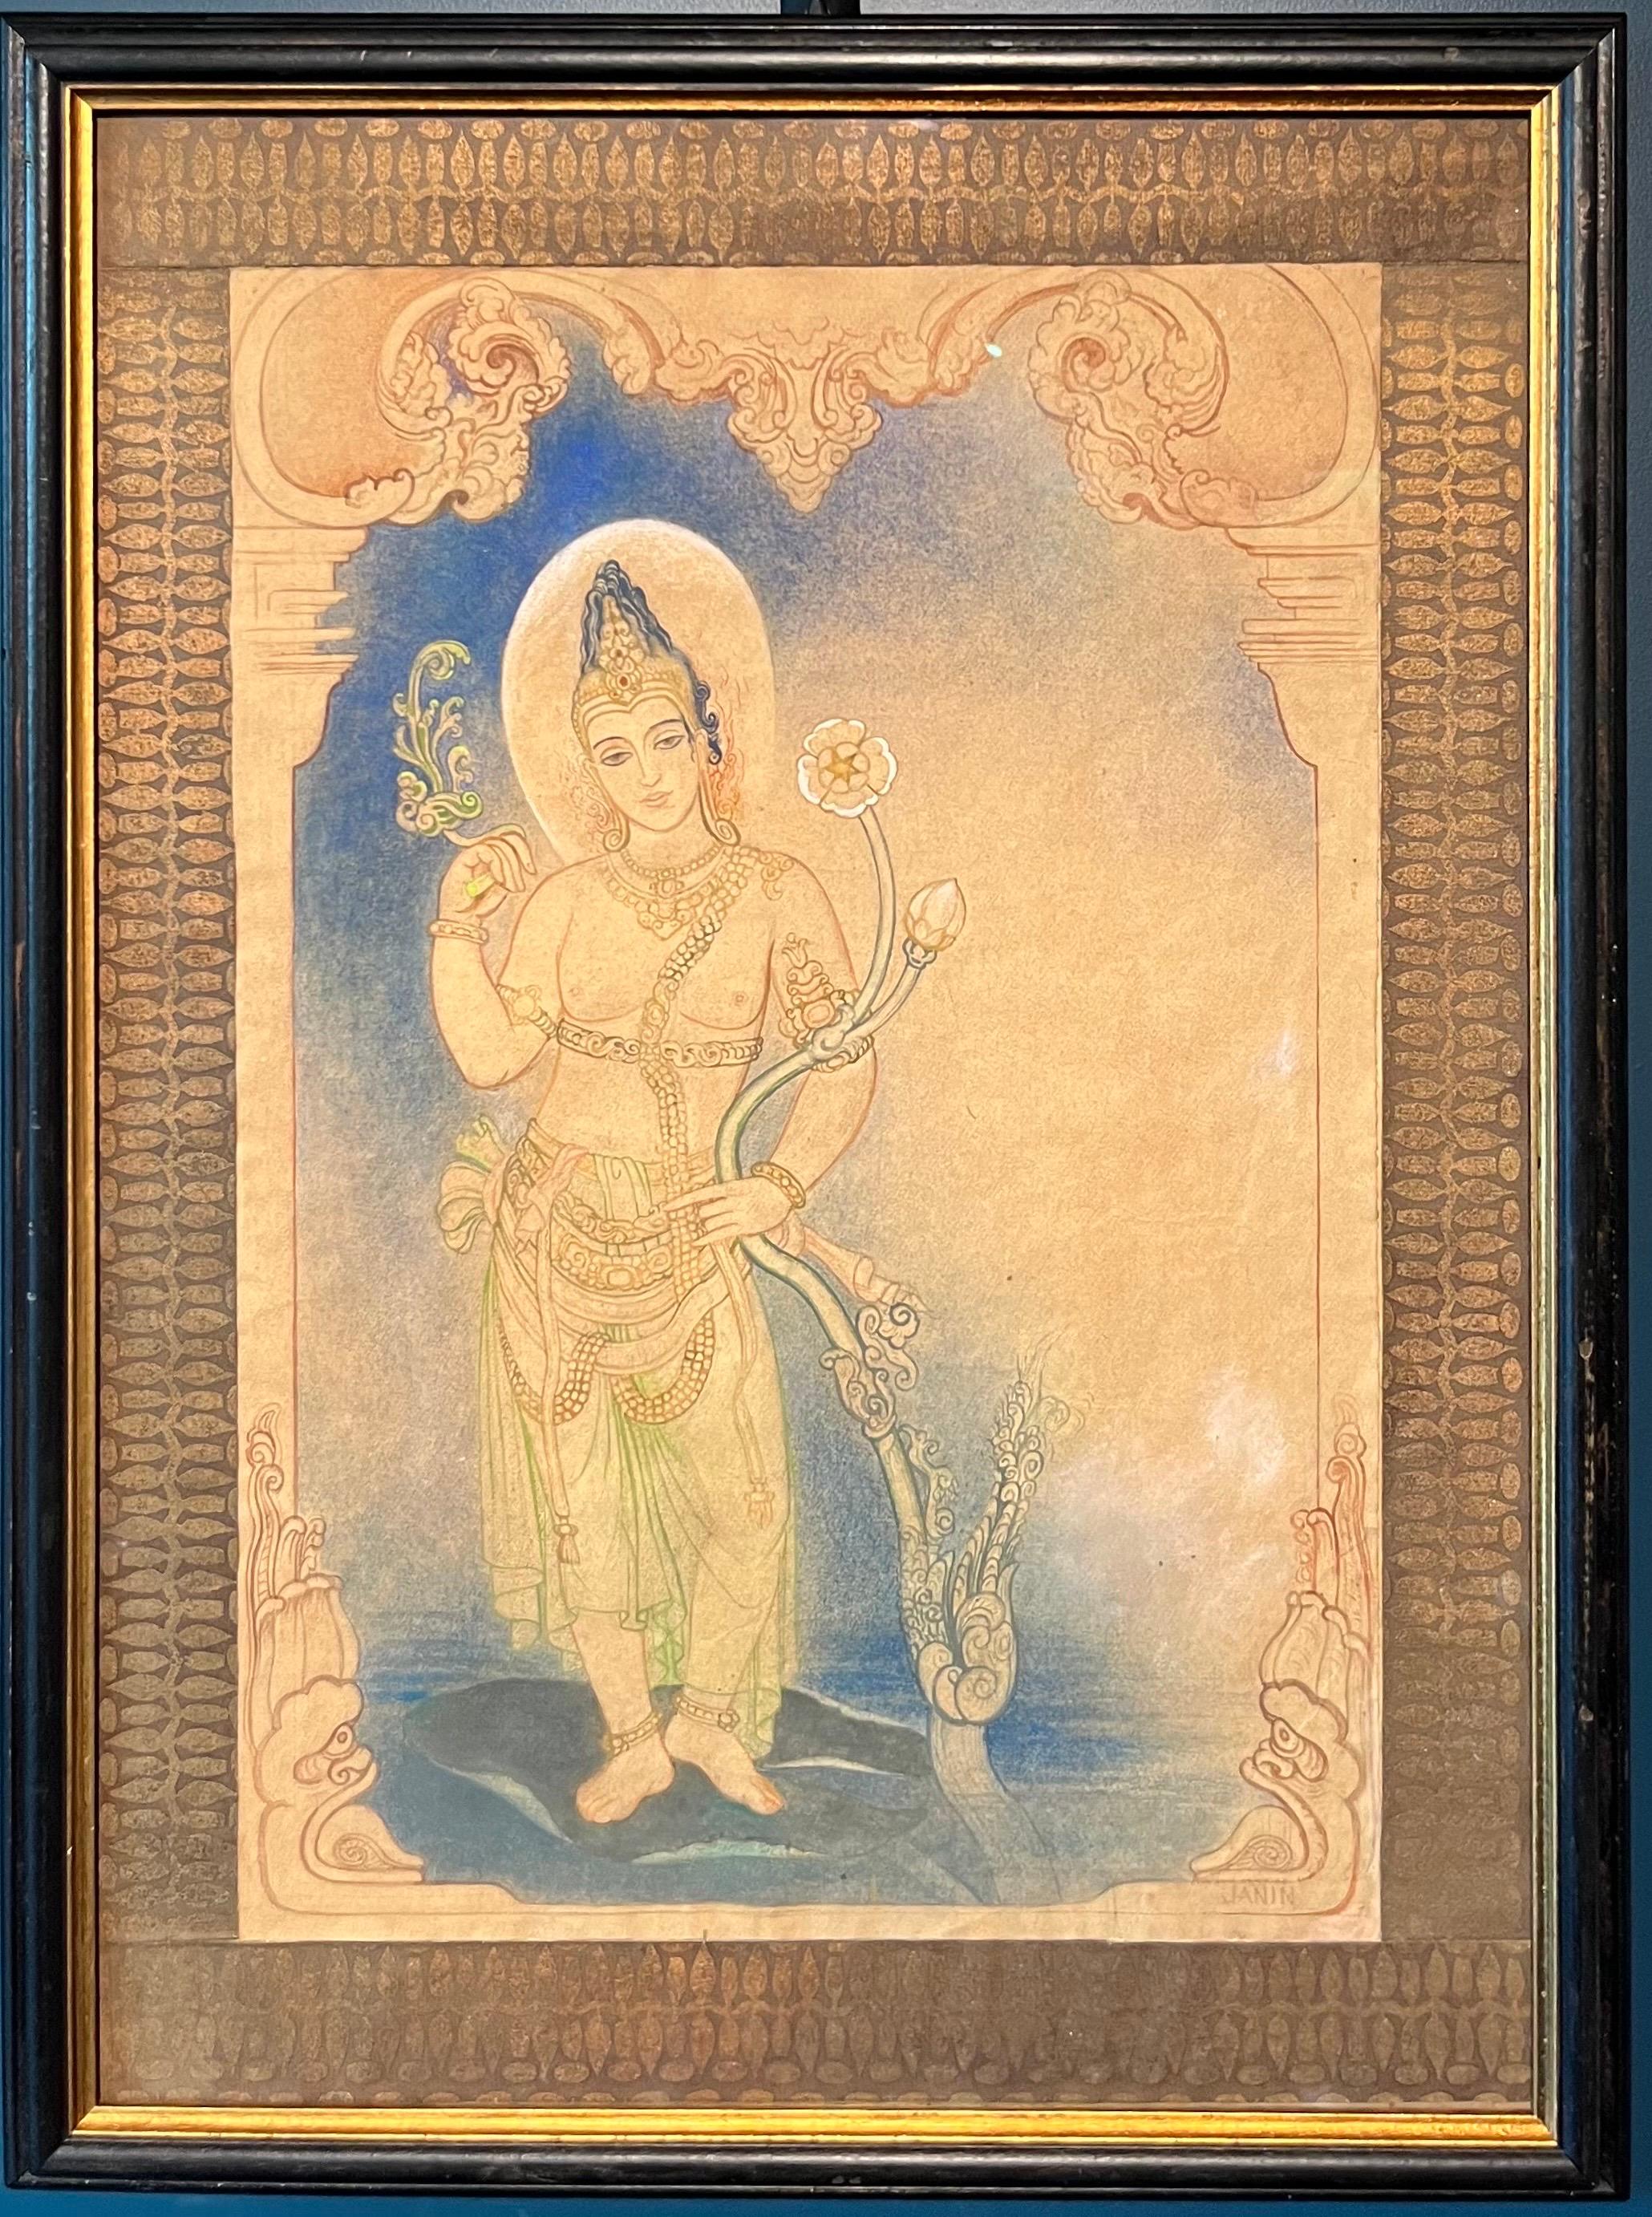 "Divinità induista" Tecnica mista su carta  cm. 48 x 33   1920 ca.